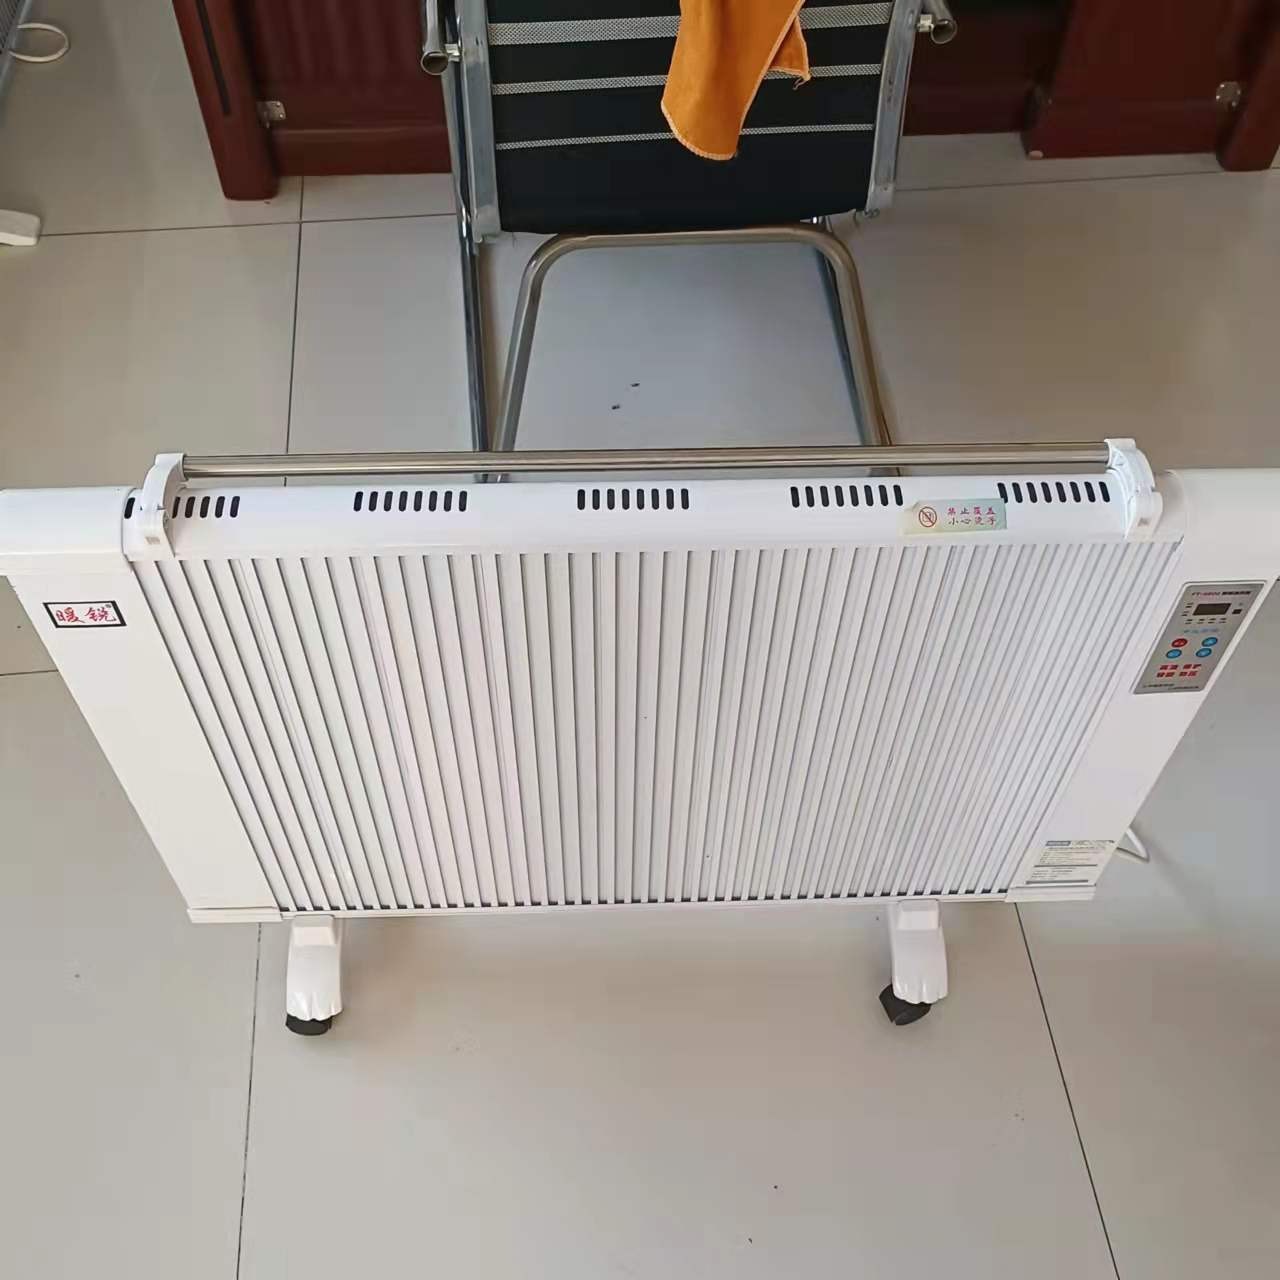 NS-2碳晶电暖器 暖硕 数显版电暖器 远红外加热移动取暖器